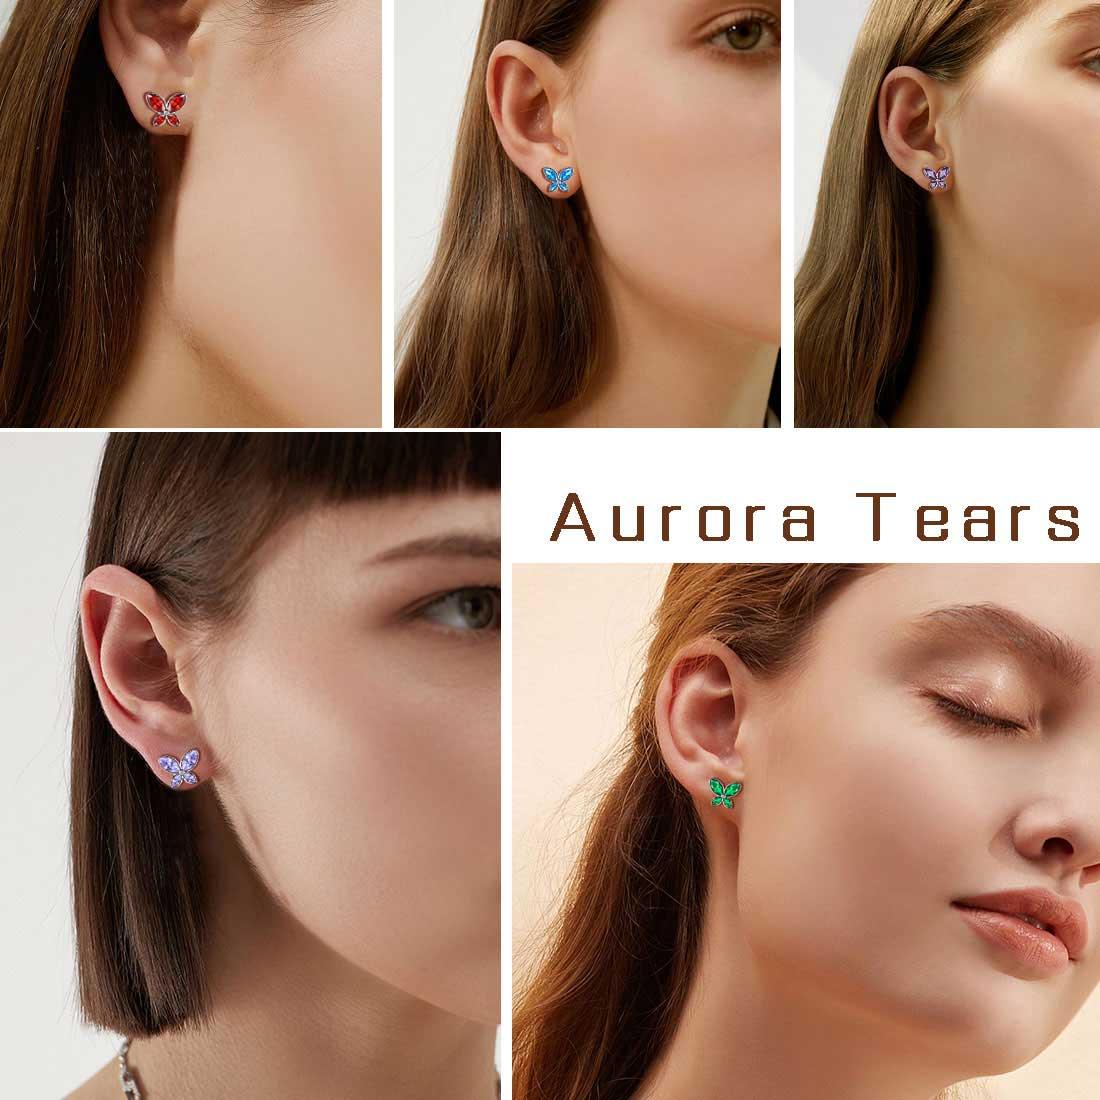 Butterfly Stud Earrings Birthstone January Garnet - Earrings - Aurora Tears